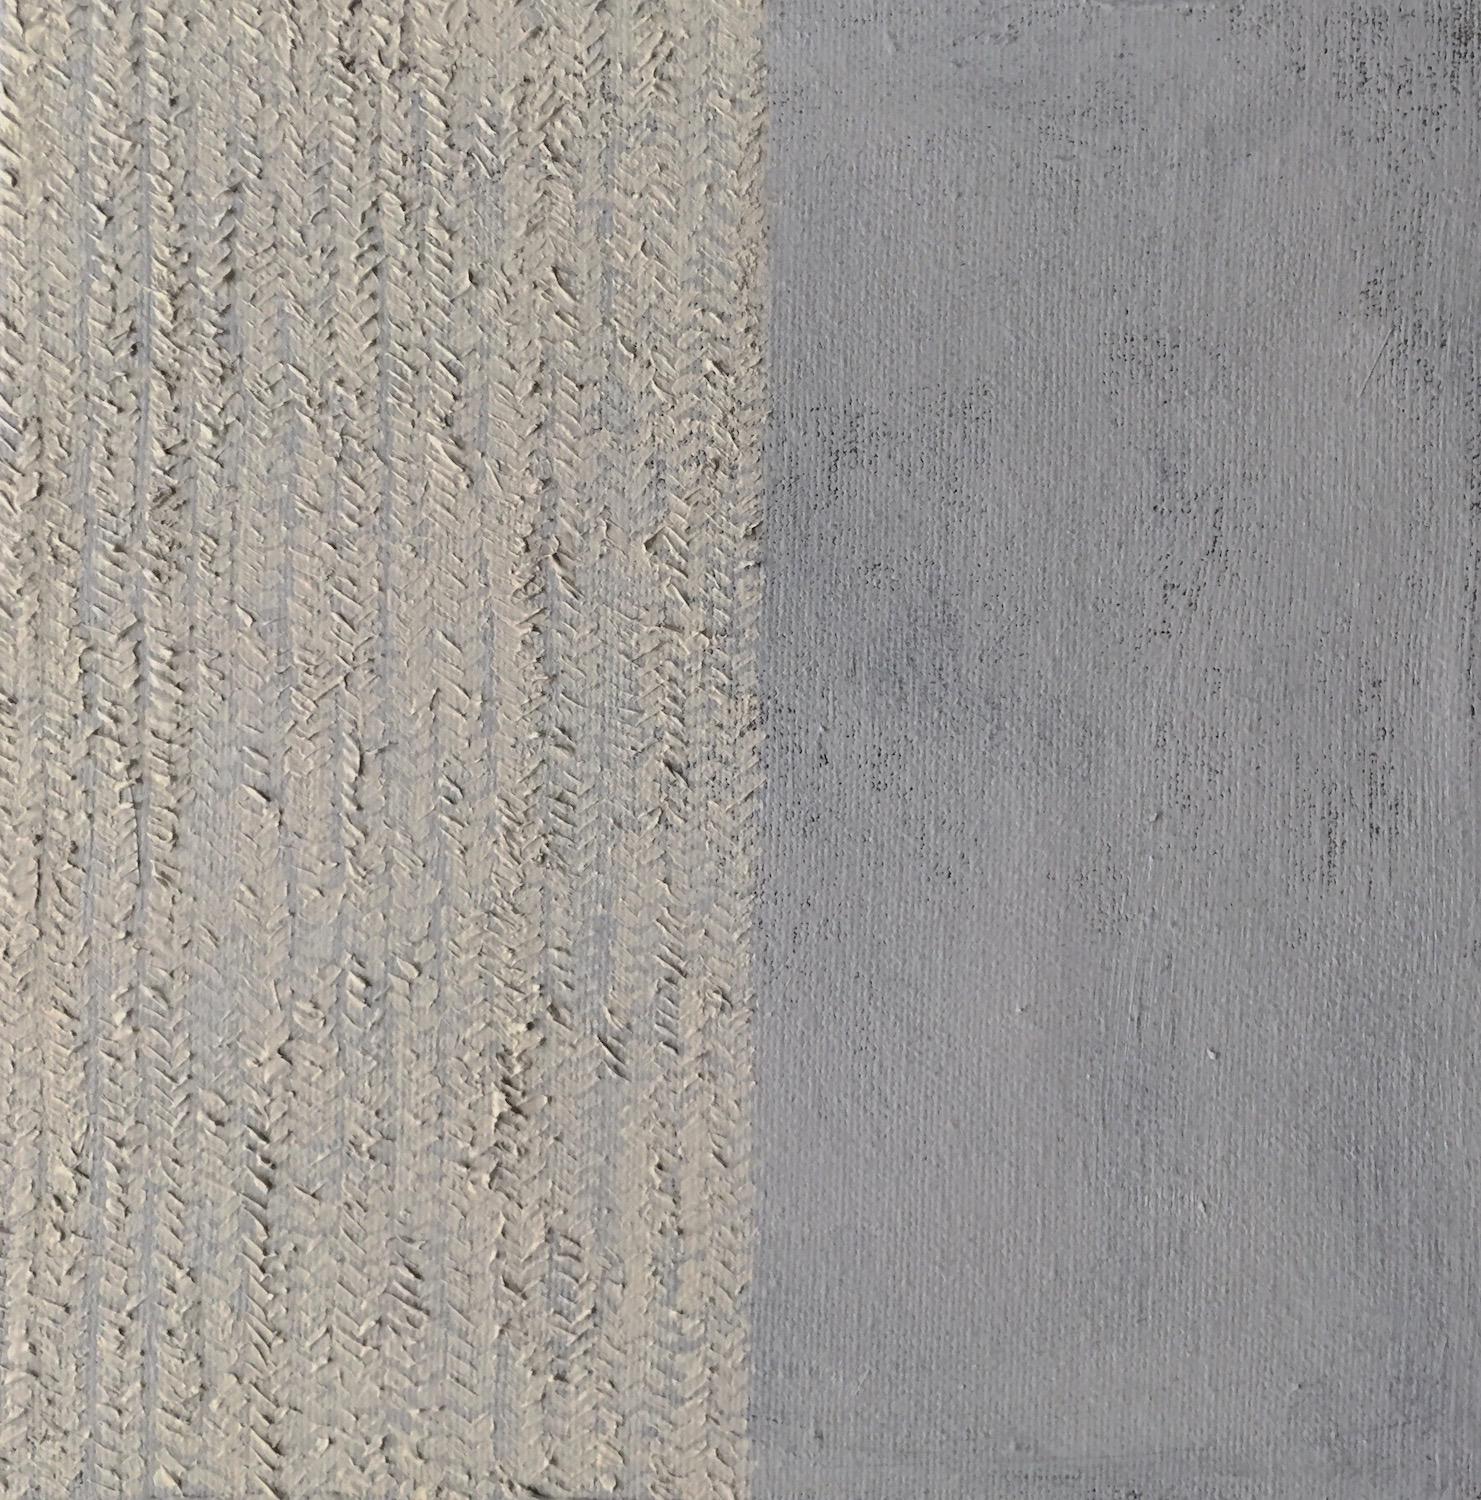 Untitled (Abstract 20) Minimal, Textured, Grey, Beige, Neutrals